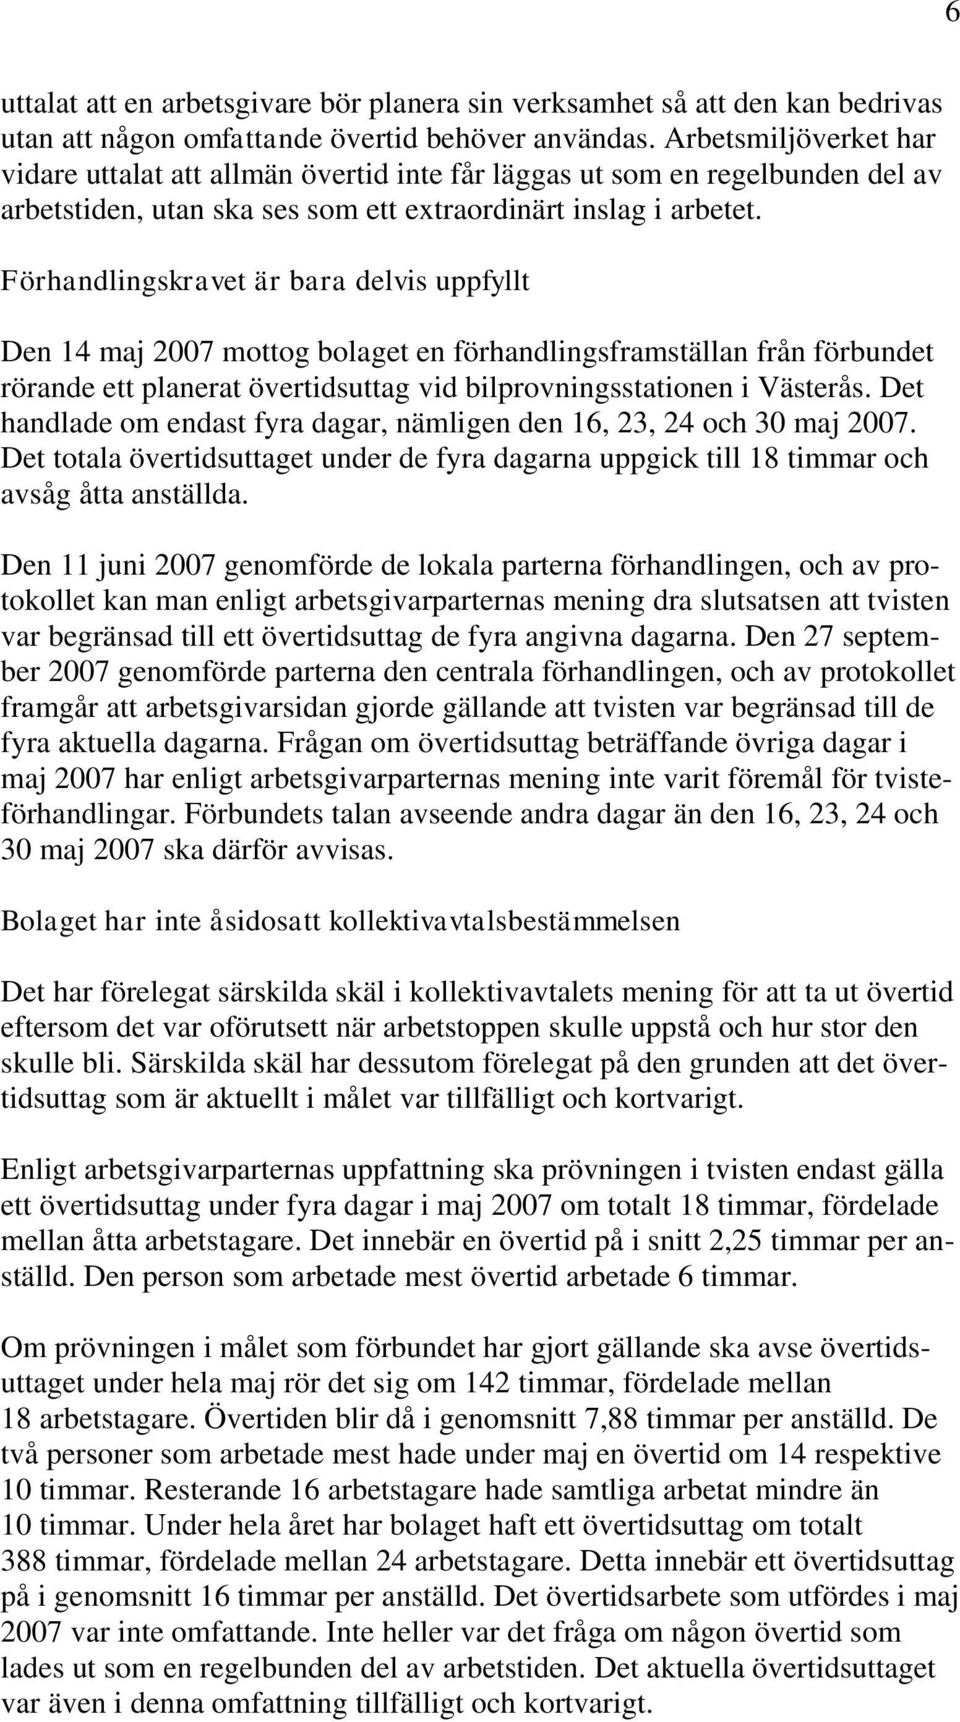 Förhandlingskravet är bara delvis uppfyllt Den 14 maj 2007 mottog bolaget en förhandlingsframställan från förbundet rörande ett planerat övertidsuttag vid bilprovningsstationen i Västerås.